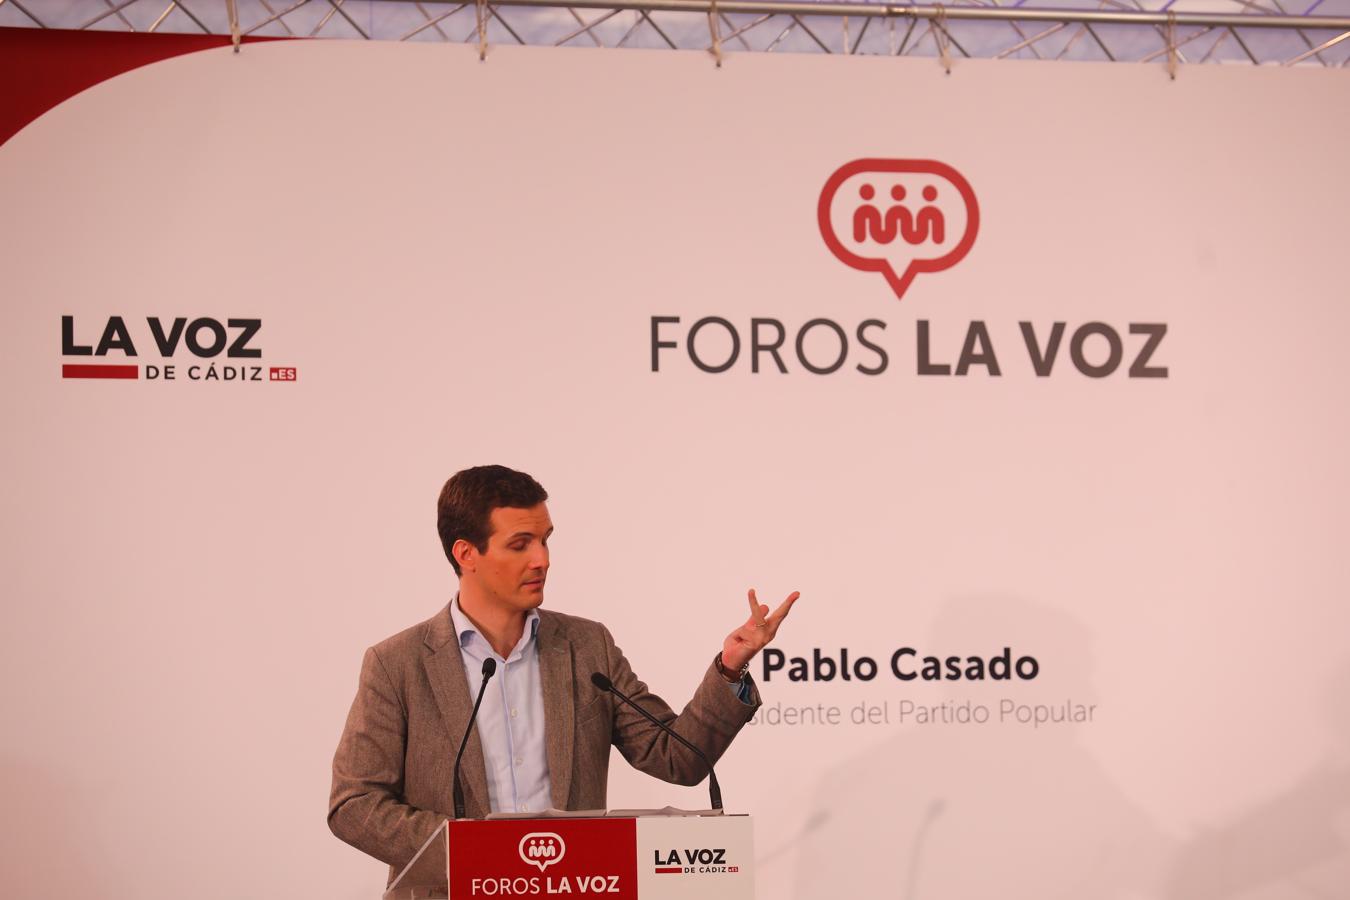 El presidente del Partido Popular Pablo Casado interviene en los Foros de La Voz de Cádiz